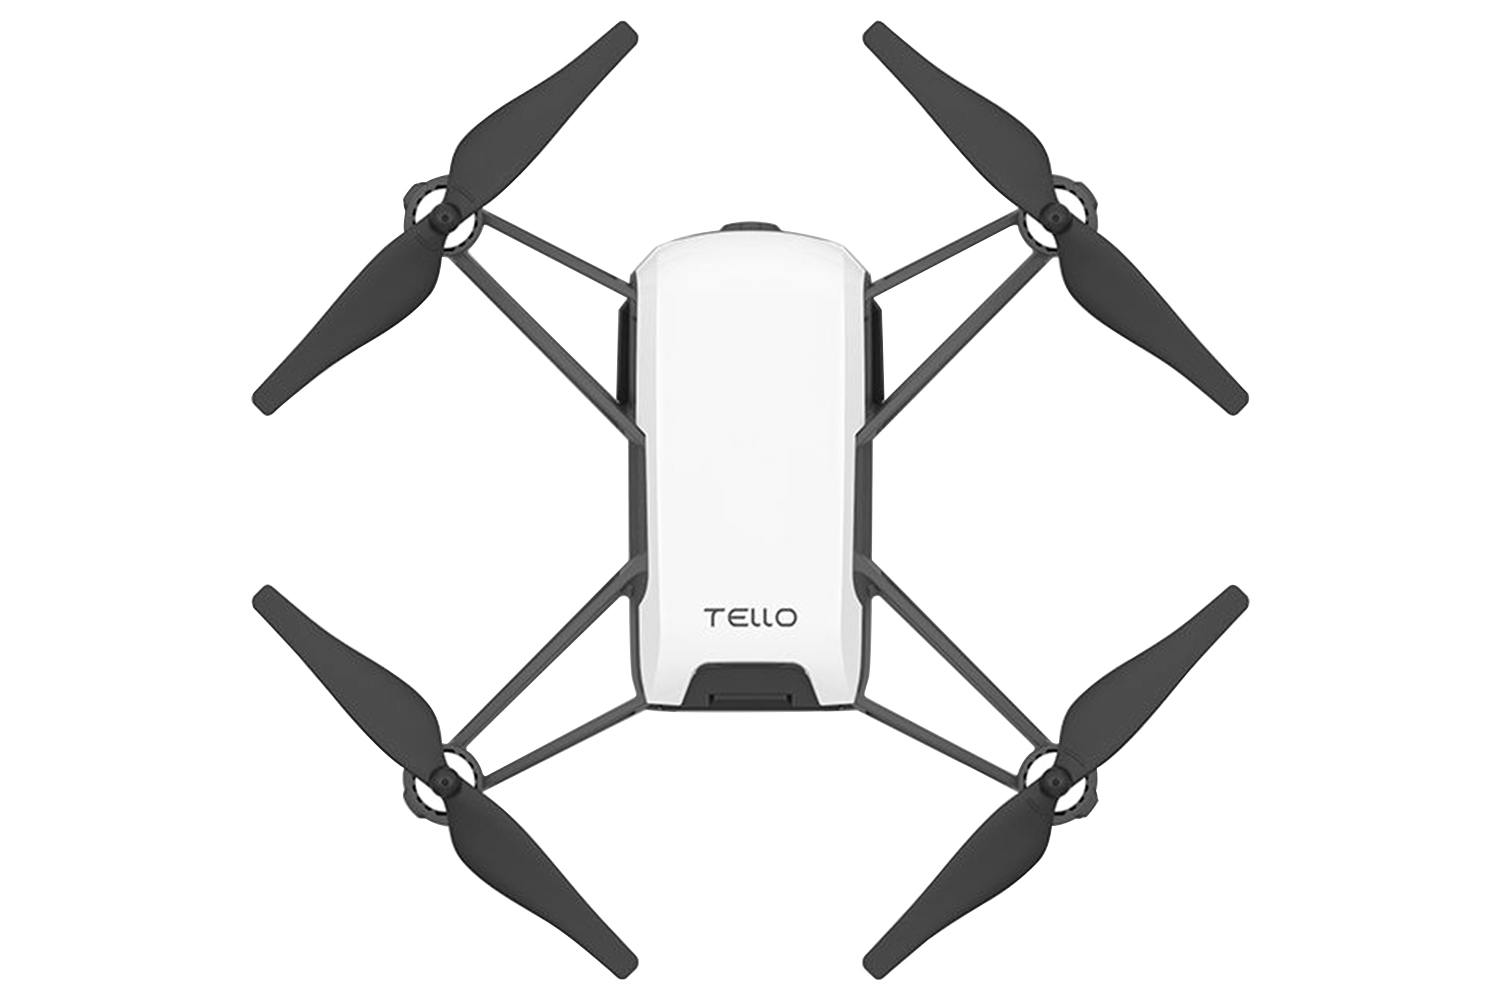 Ryze Tello Drone | Powered by DJI